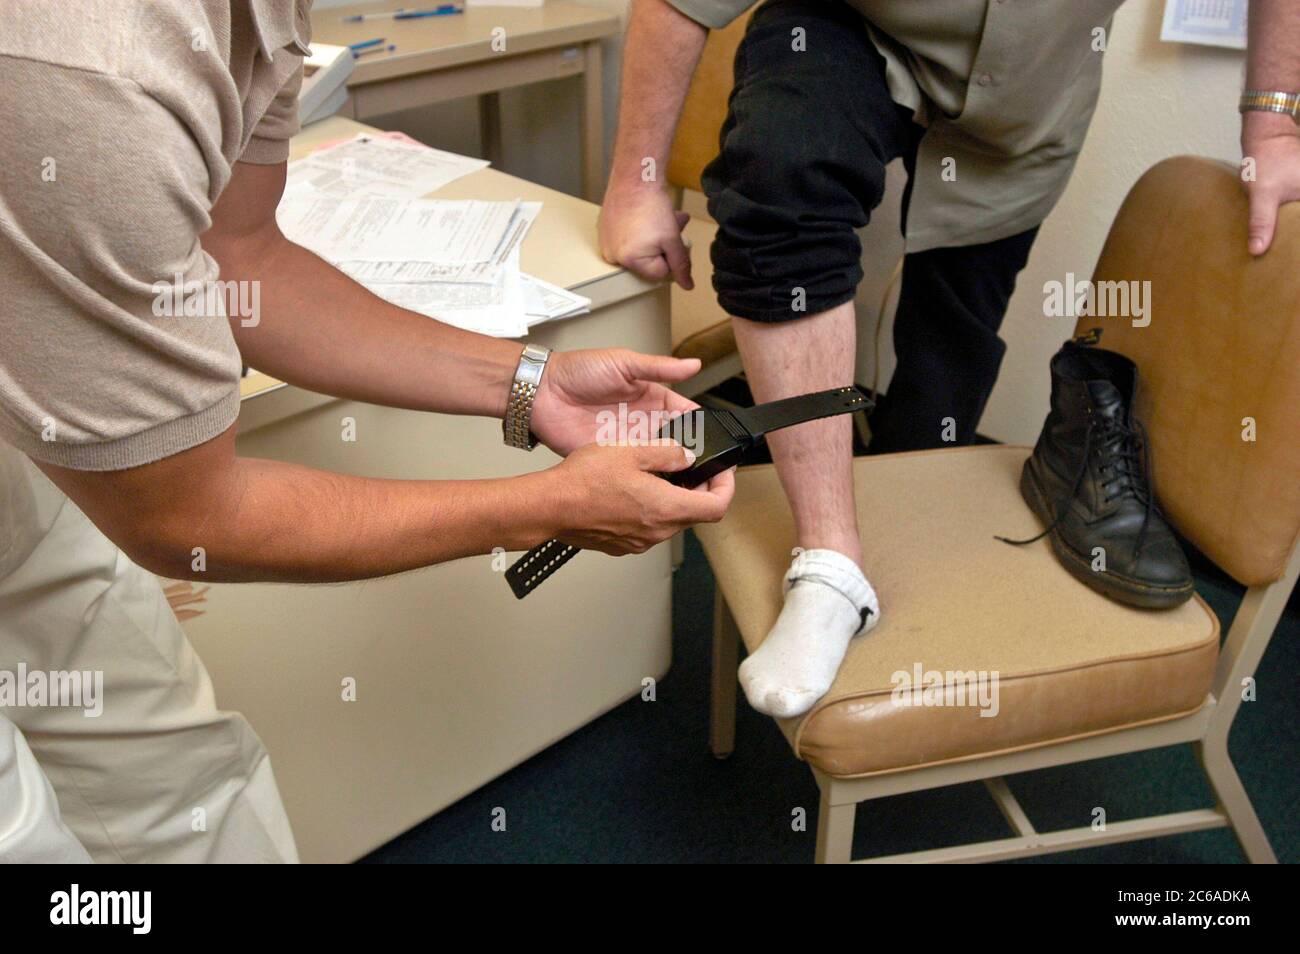 Austin, Texas États-Unis, 5 septembre 2003 : un agent de libération conditionnelle du Texas attache un dispositif de surveillance électronique à la cheville d'un détenu libéré sous condition. ©Bob Daemmrich Banque D'Images